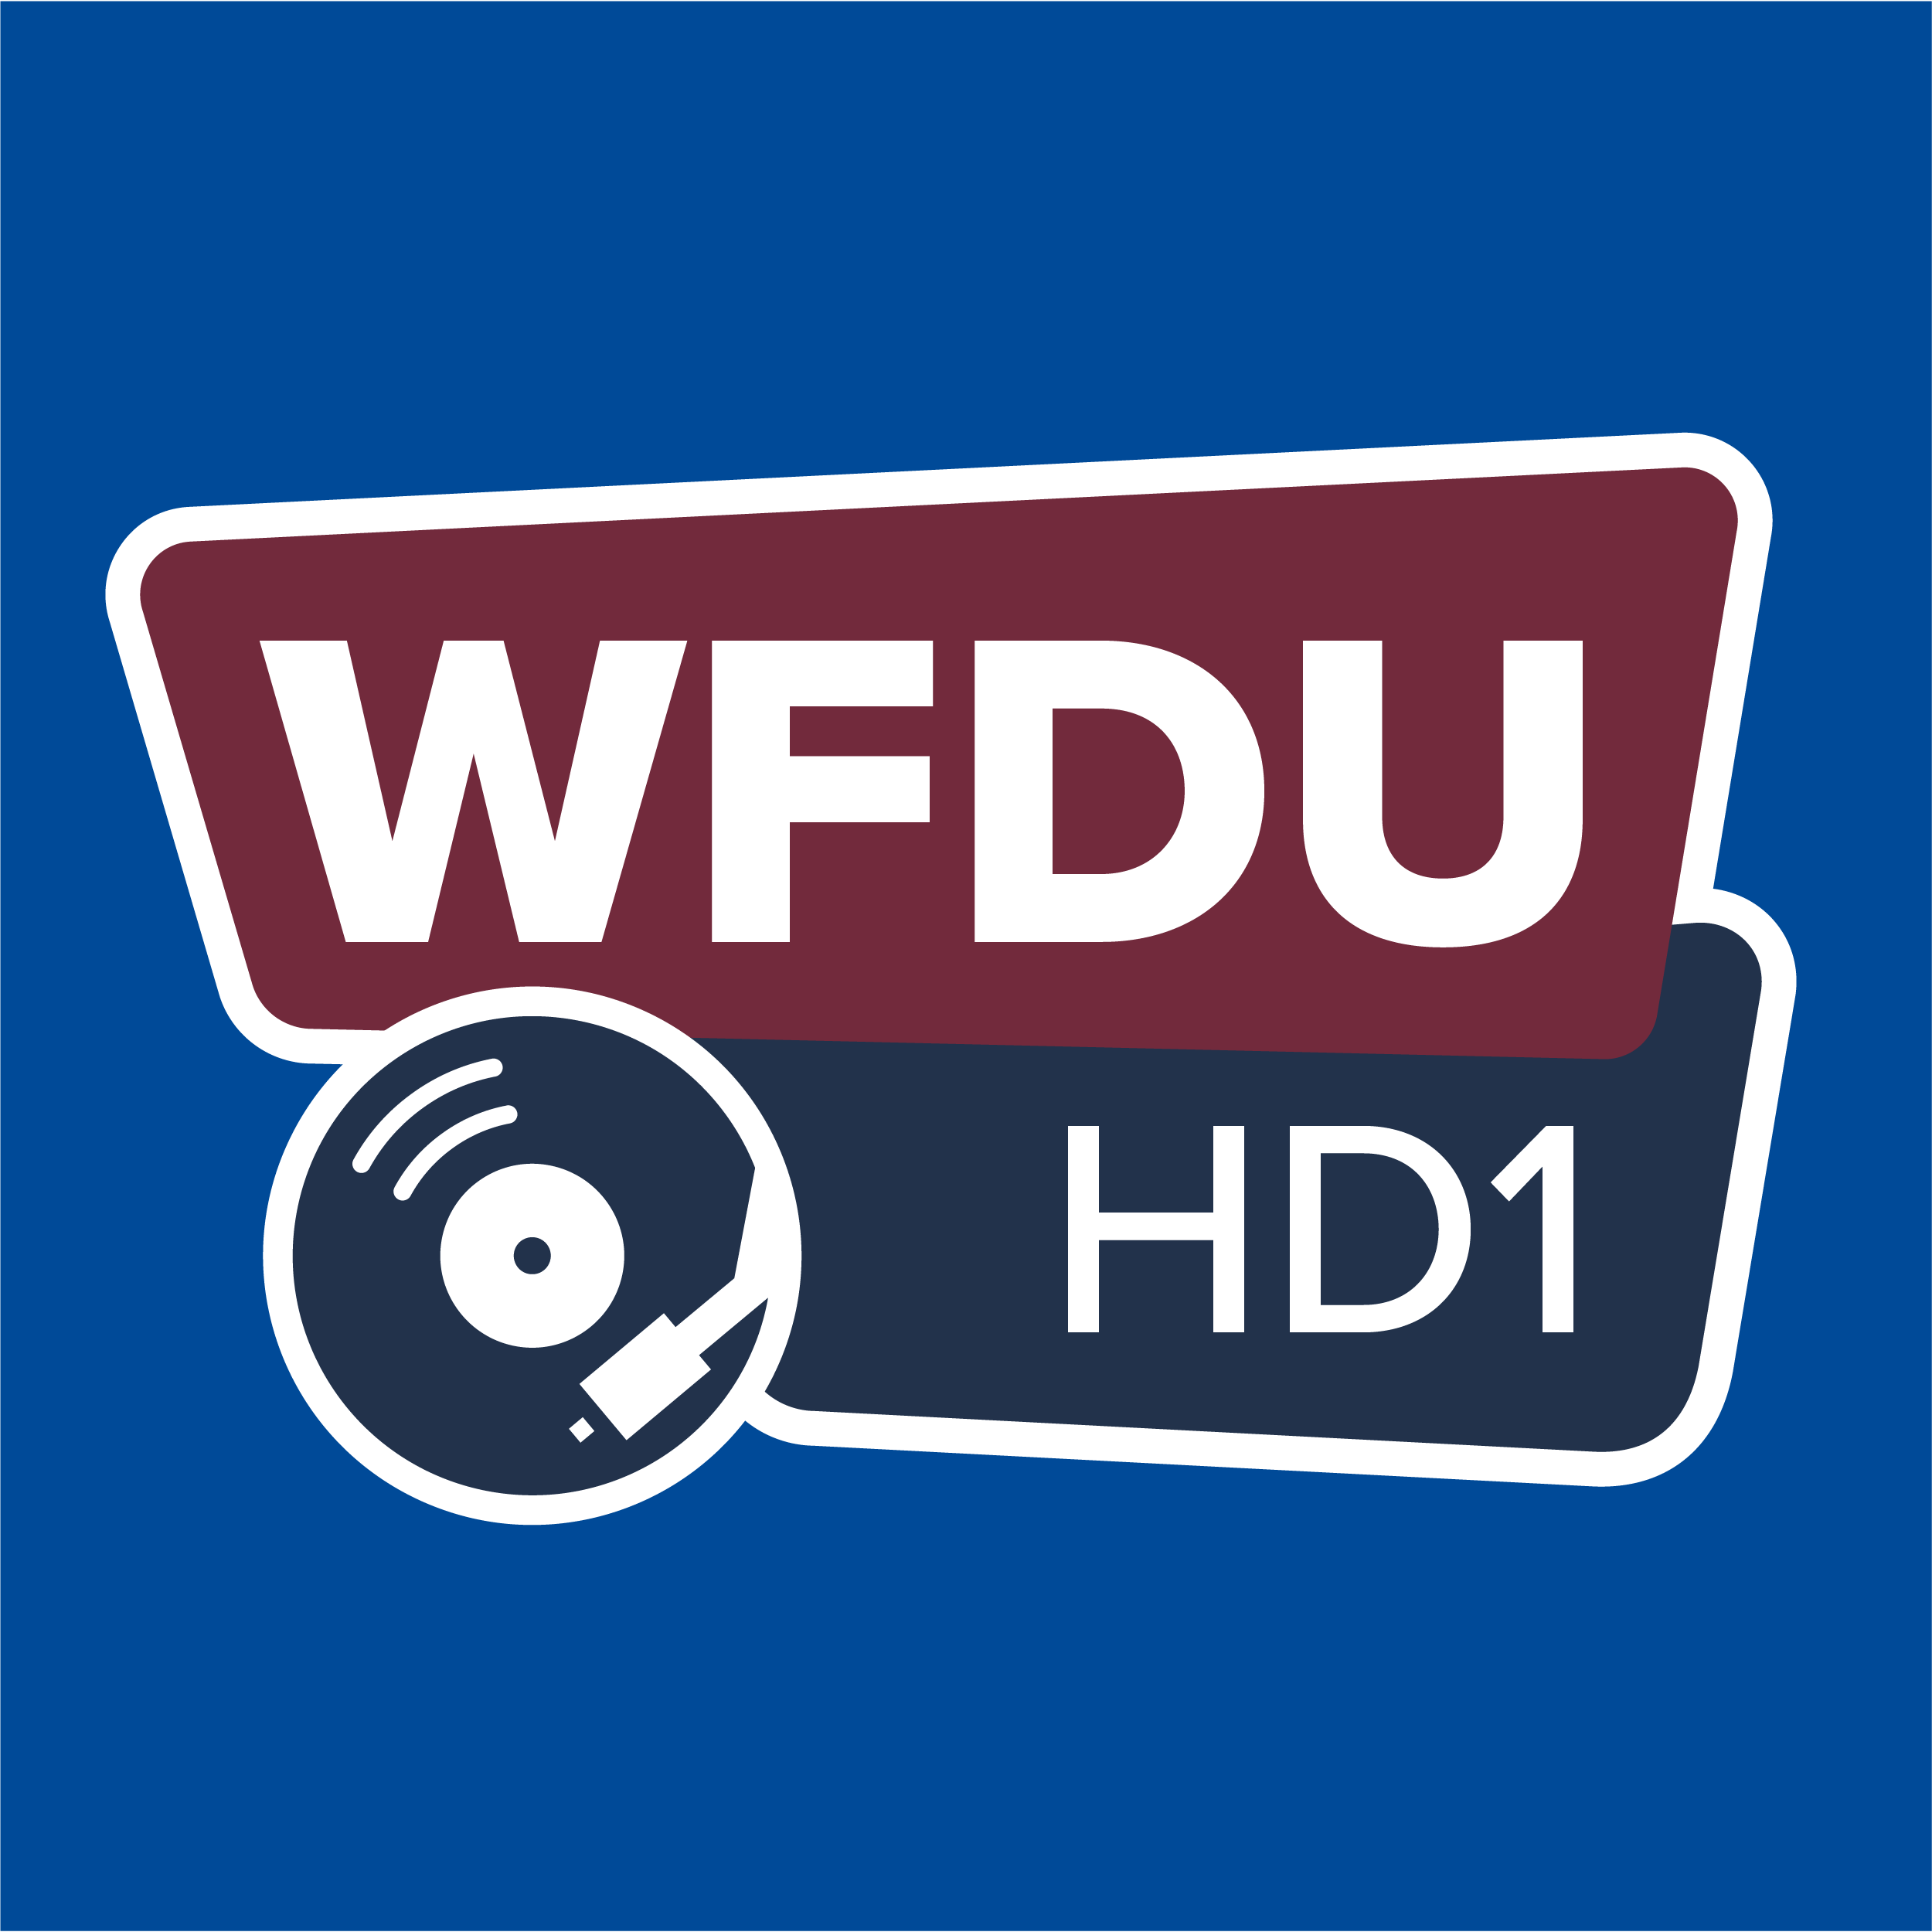 WFDU HD1